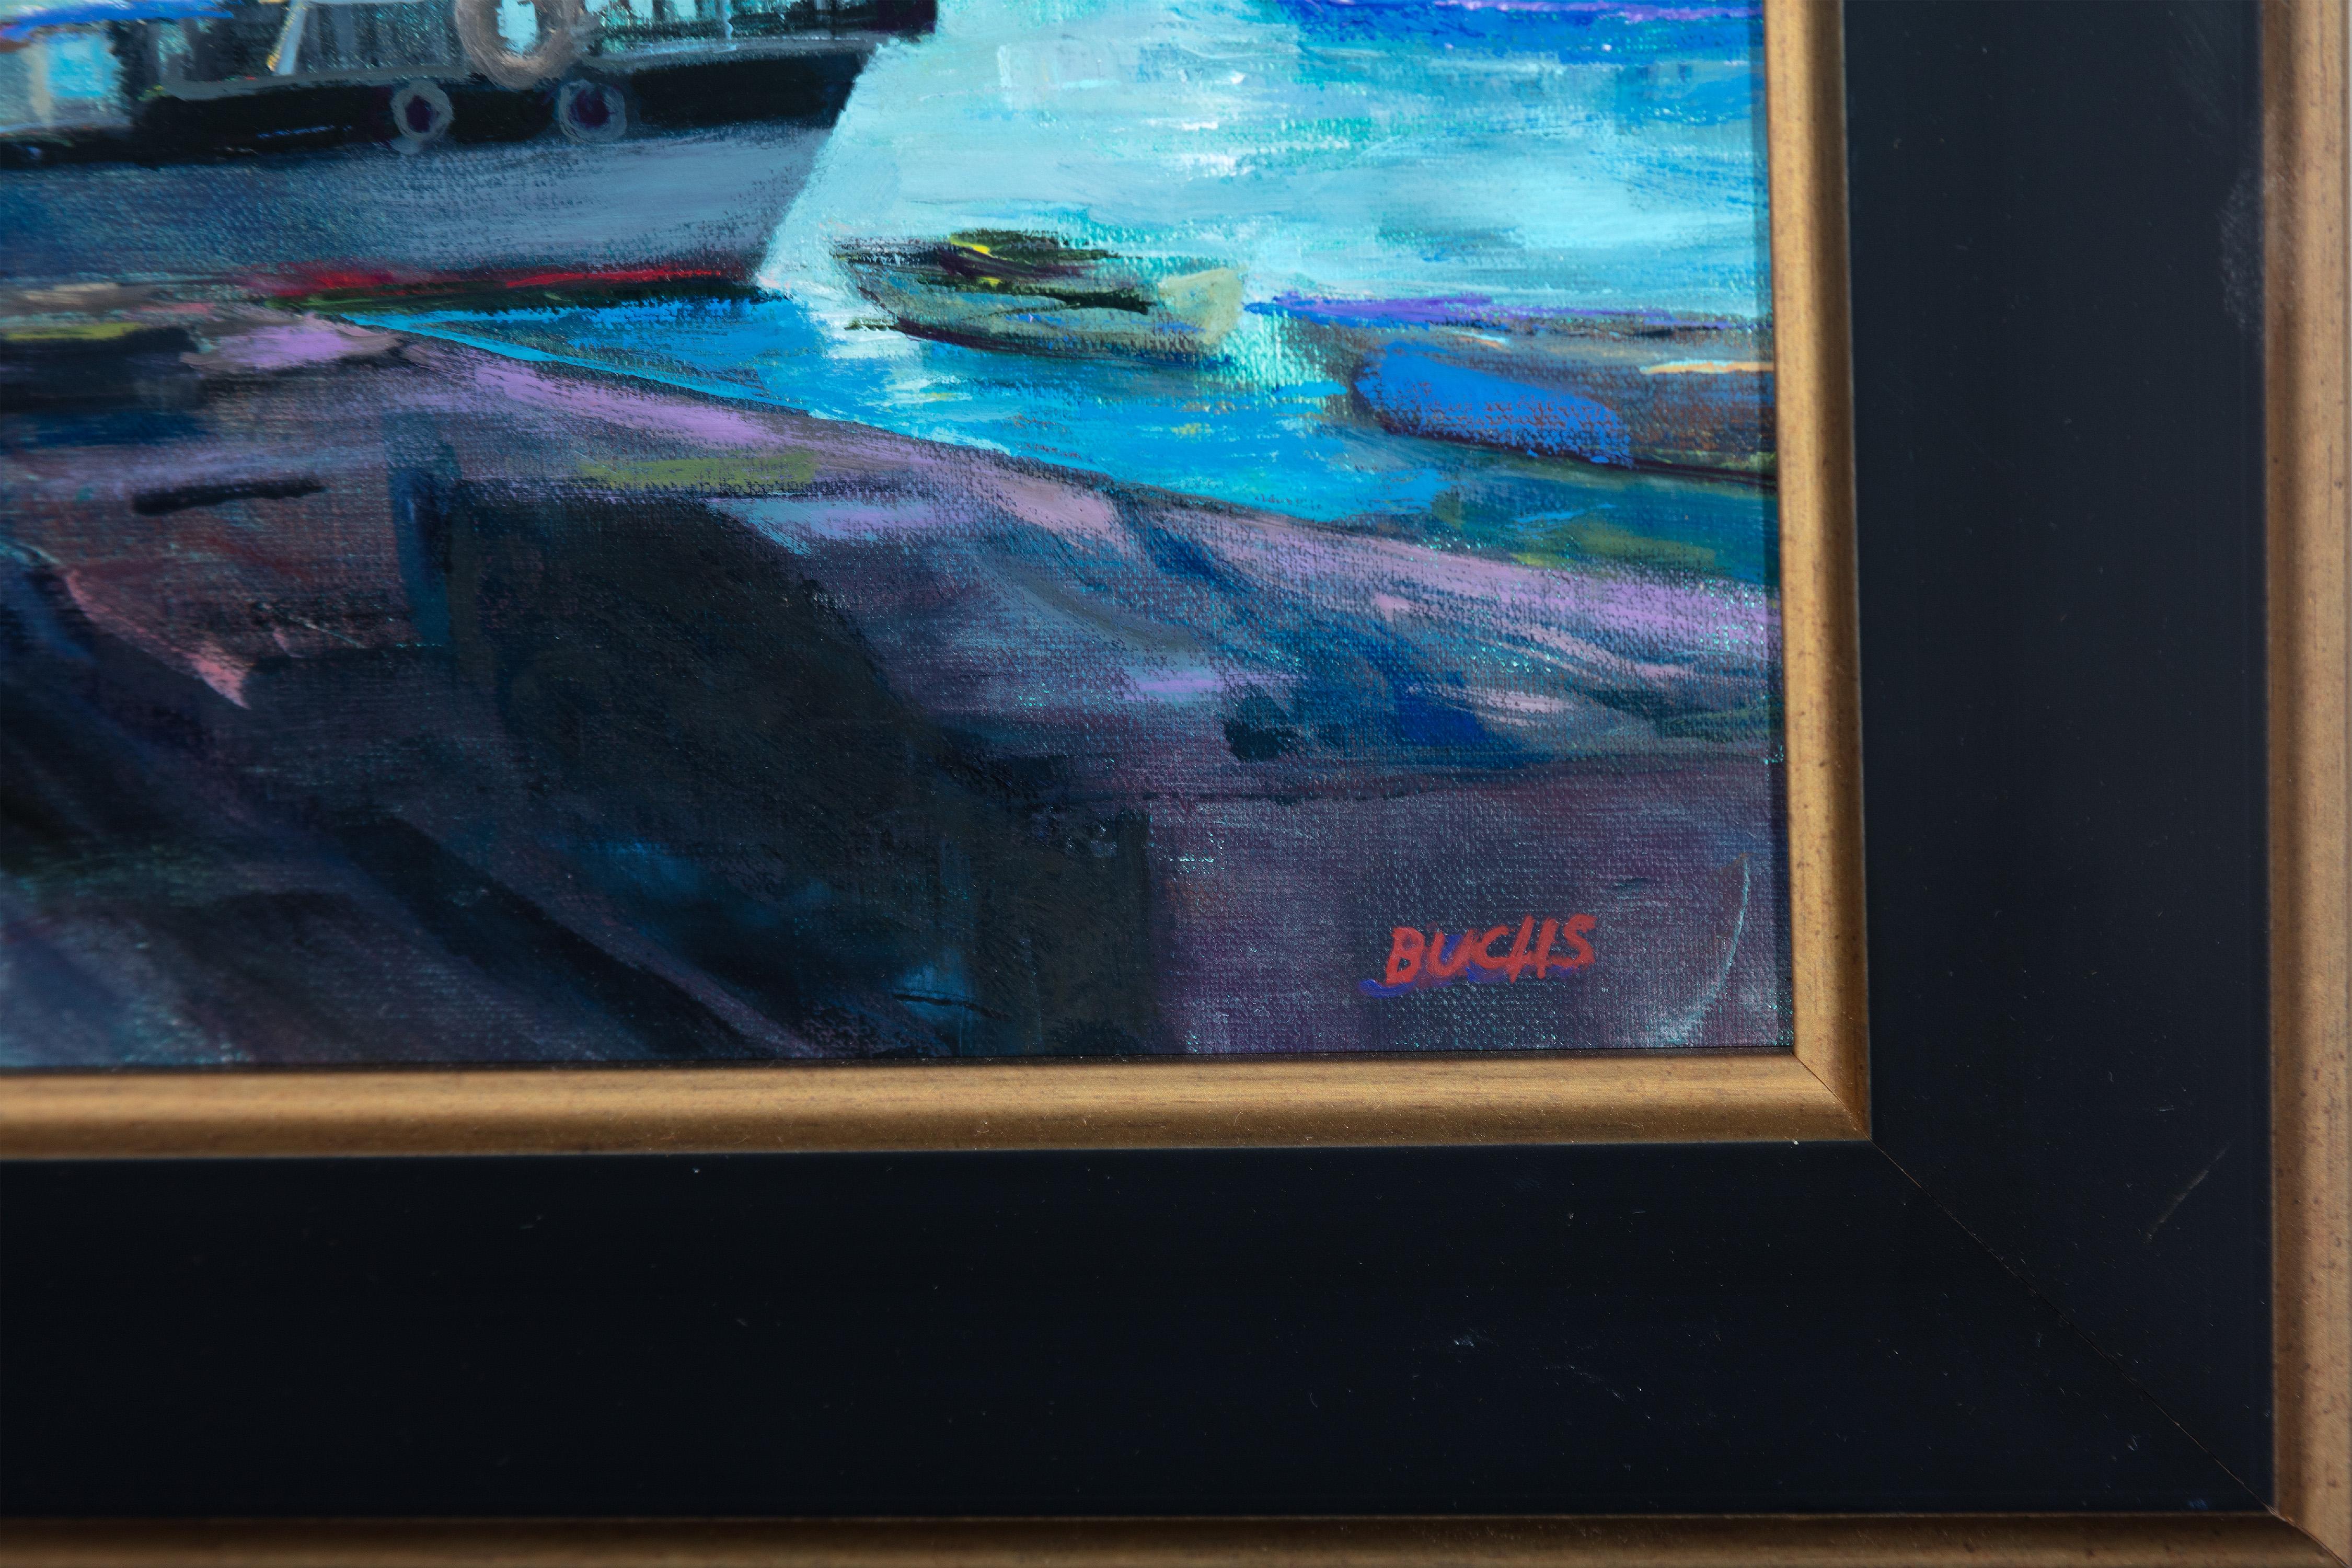 Wasserboot Nachtszene Mond Asien Reise Neoimpressionismus Contemporary Signiert (Amerikanischer Impressionismus), Painting, von Thomas Buchs